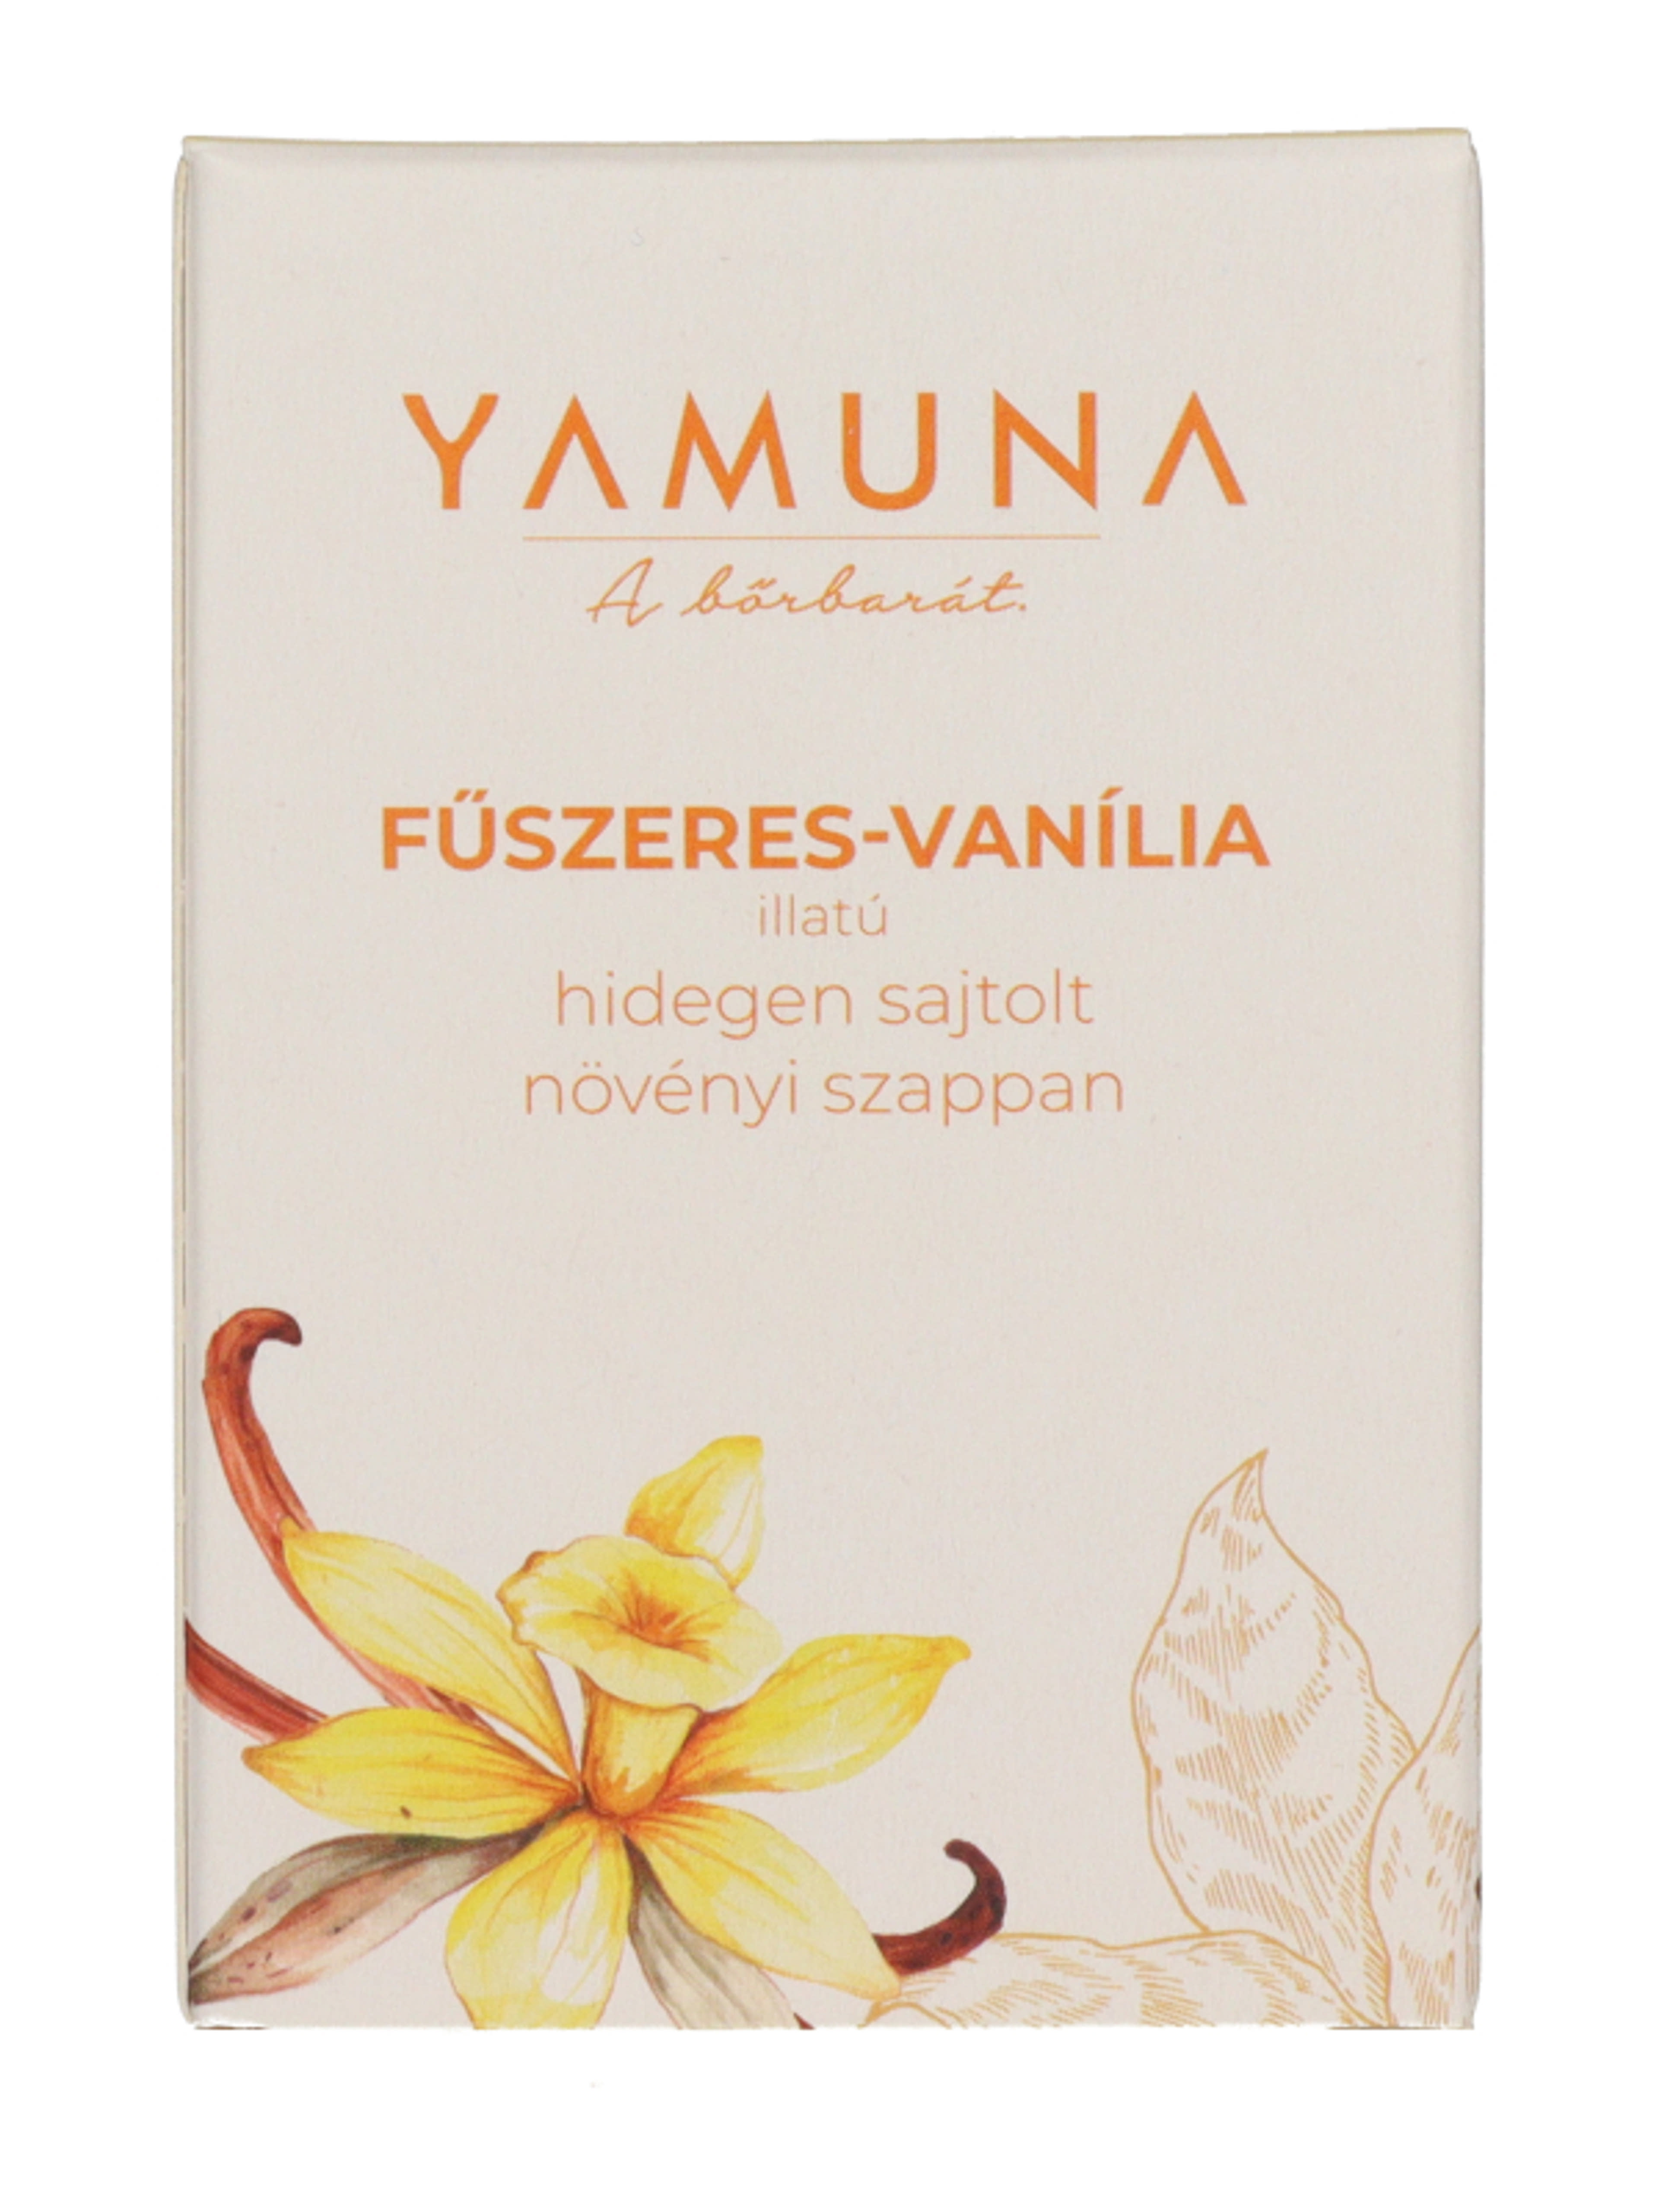 Yamuna hidegen sajtolt szappan fűszeres vanília illattal - 110 g